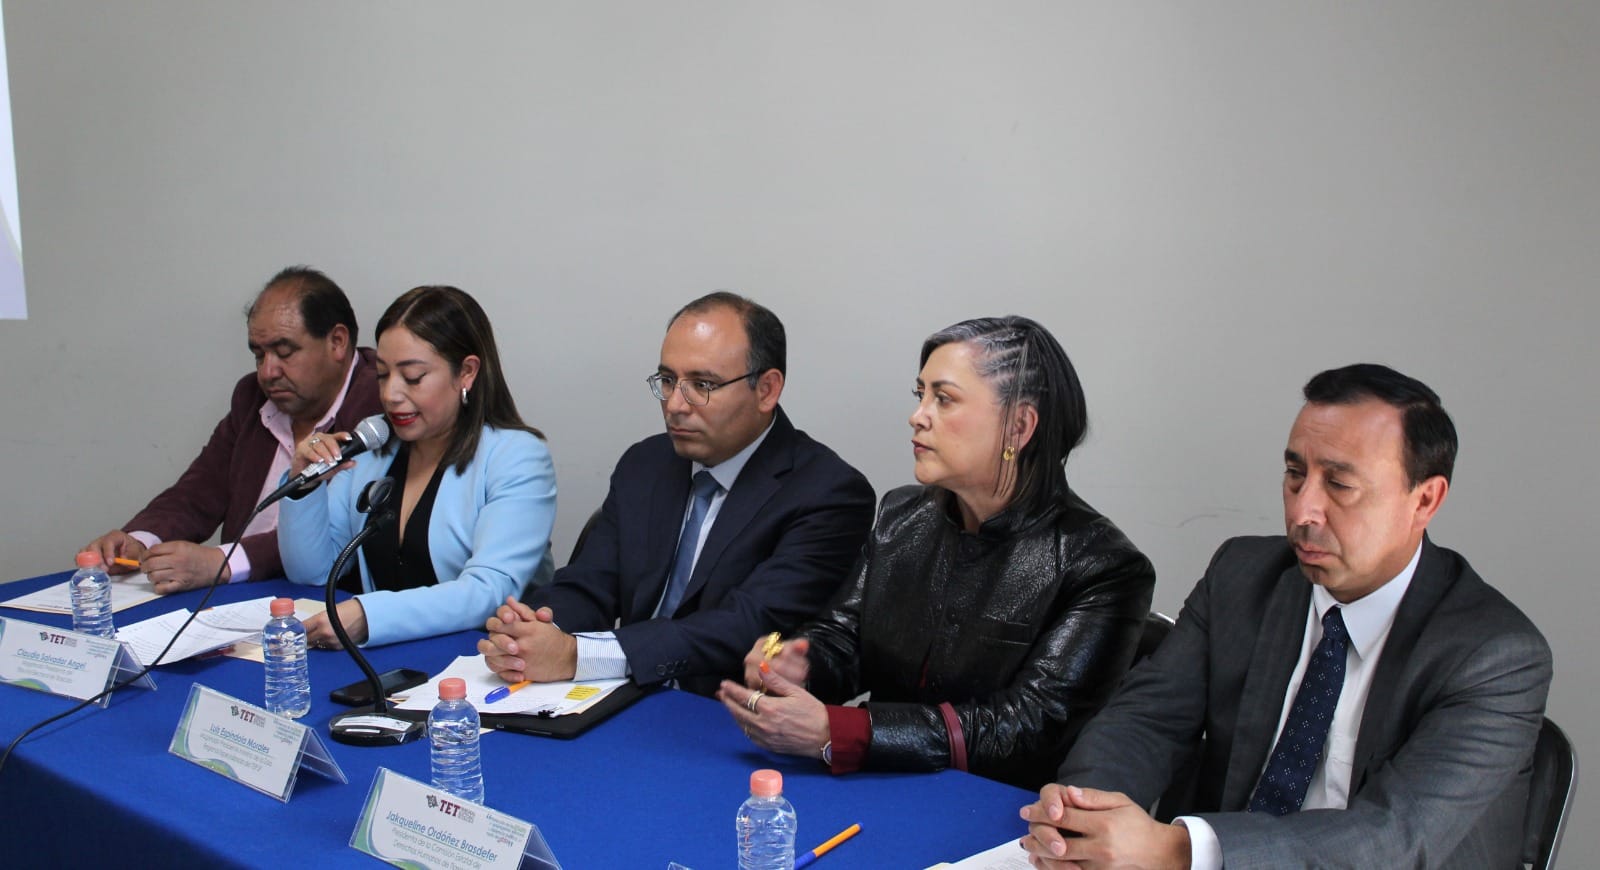 Magistrada Presidenta del Tribunal Electoral de Tlaxcala durante la presentación del evento